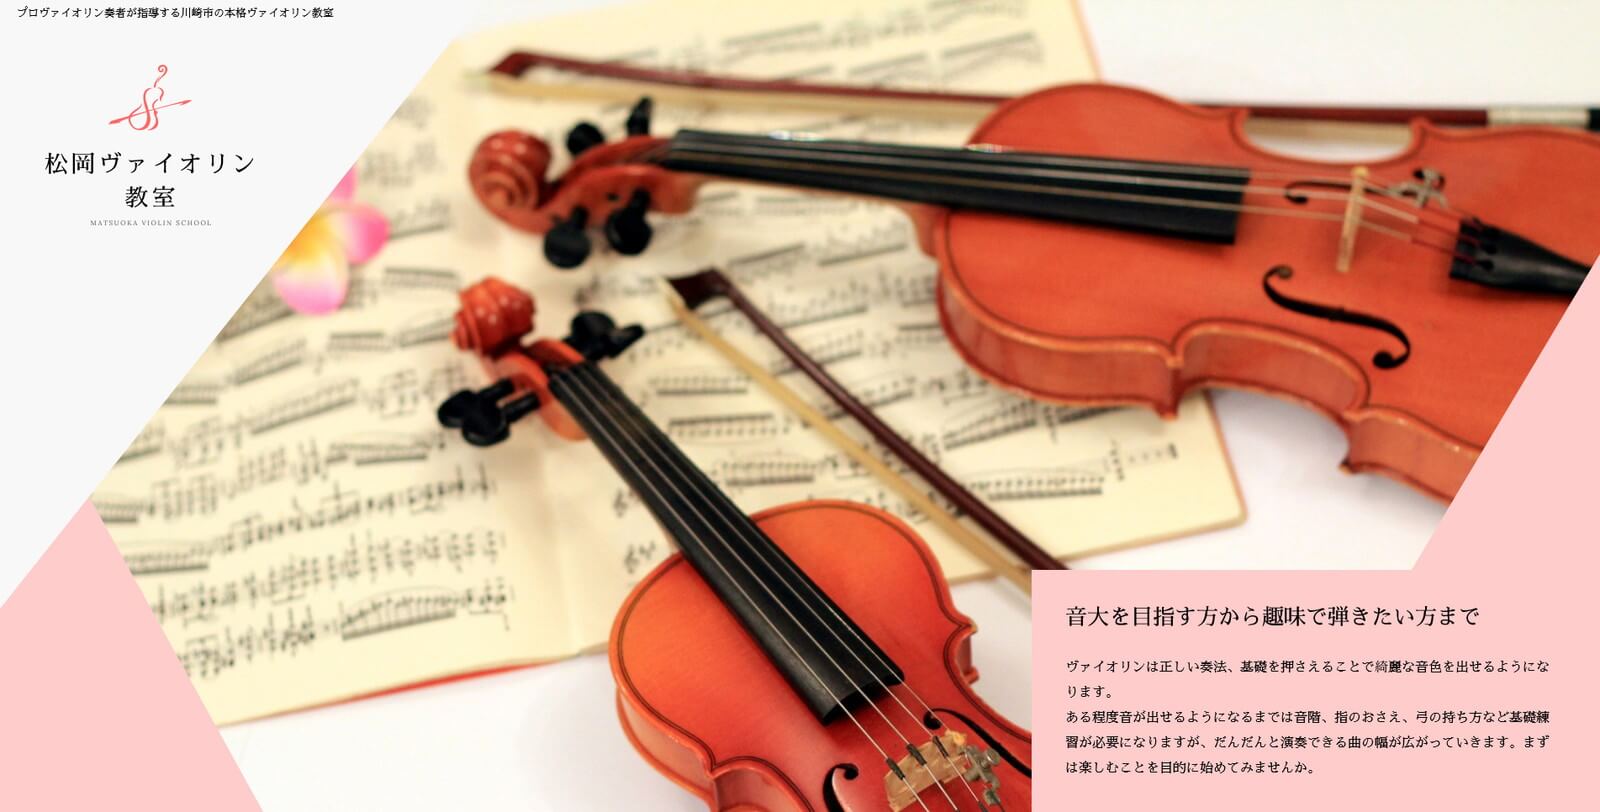  松岡ヴァイオリン教室 